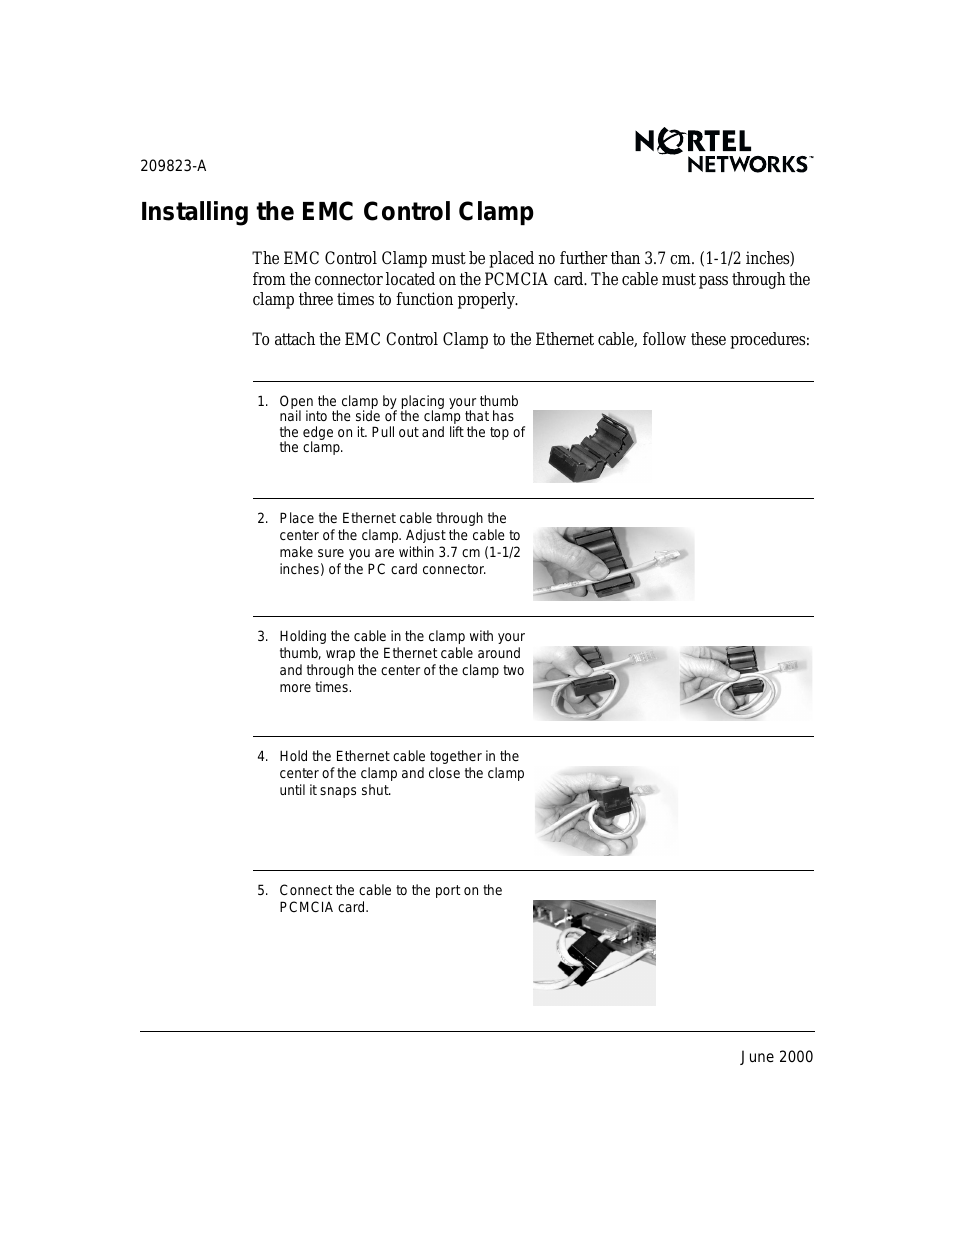 Control Clamp EMC